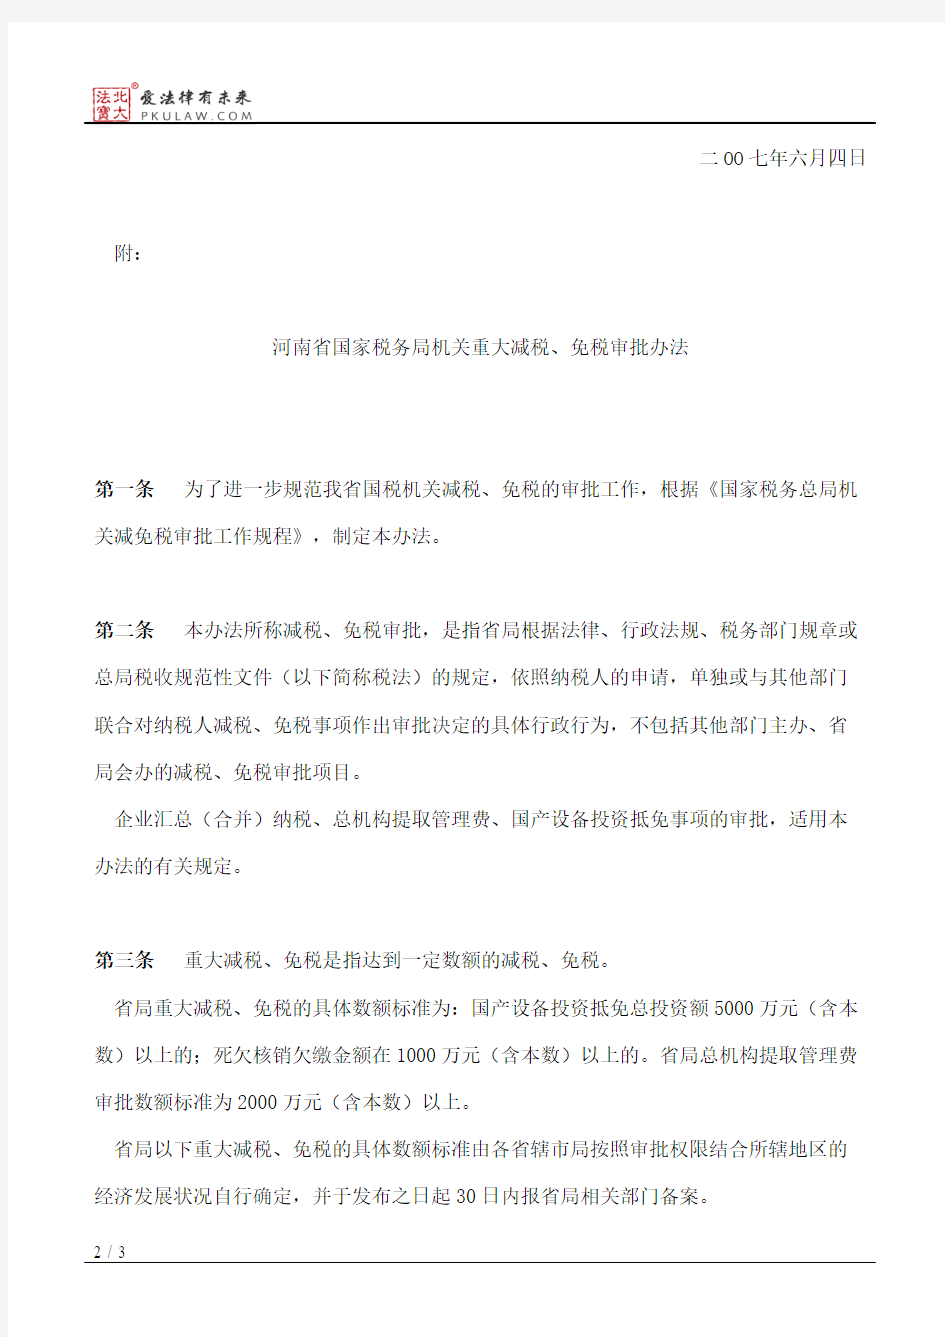 河南省国家税务局关于印发《河南省国家税务局机关重大减税、免税